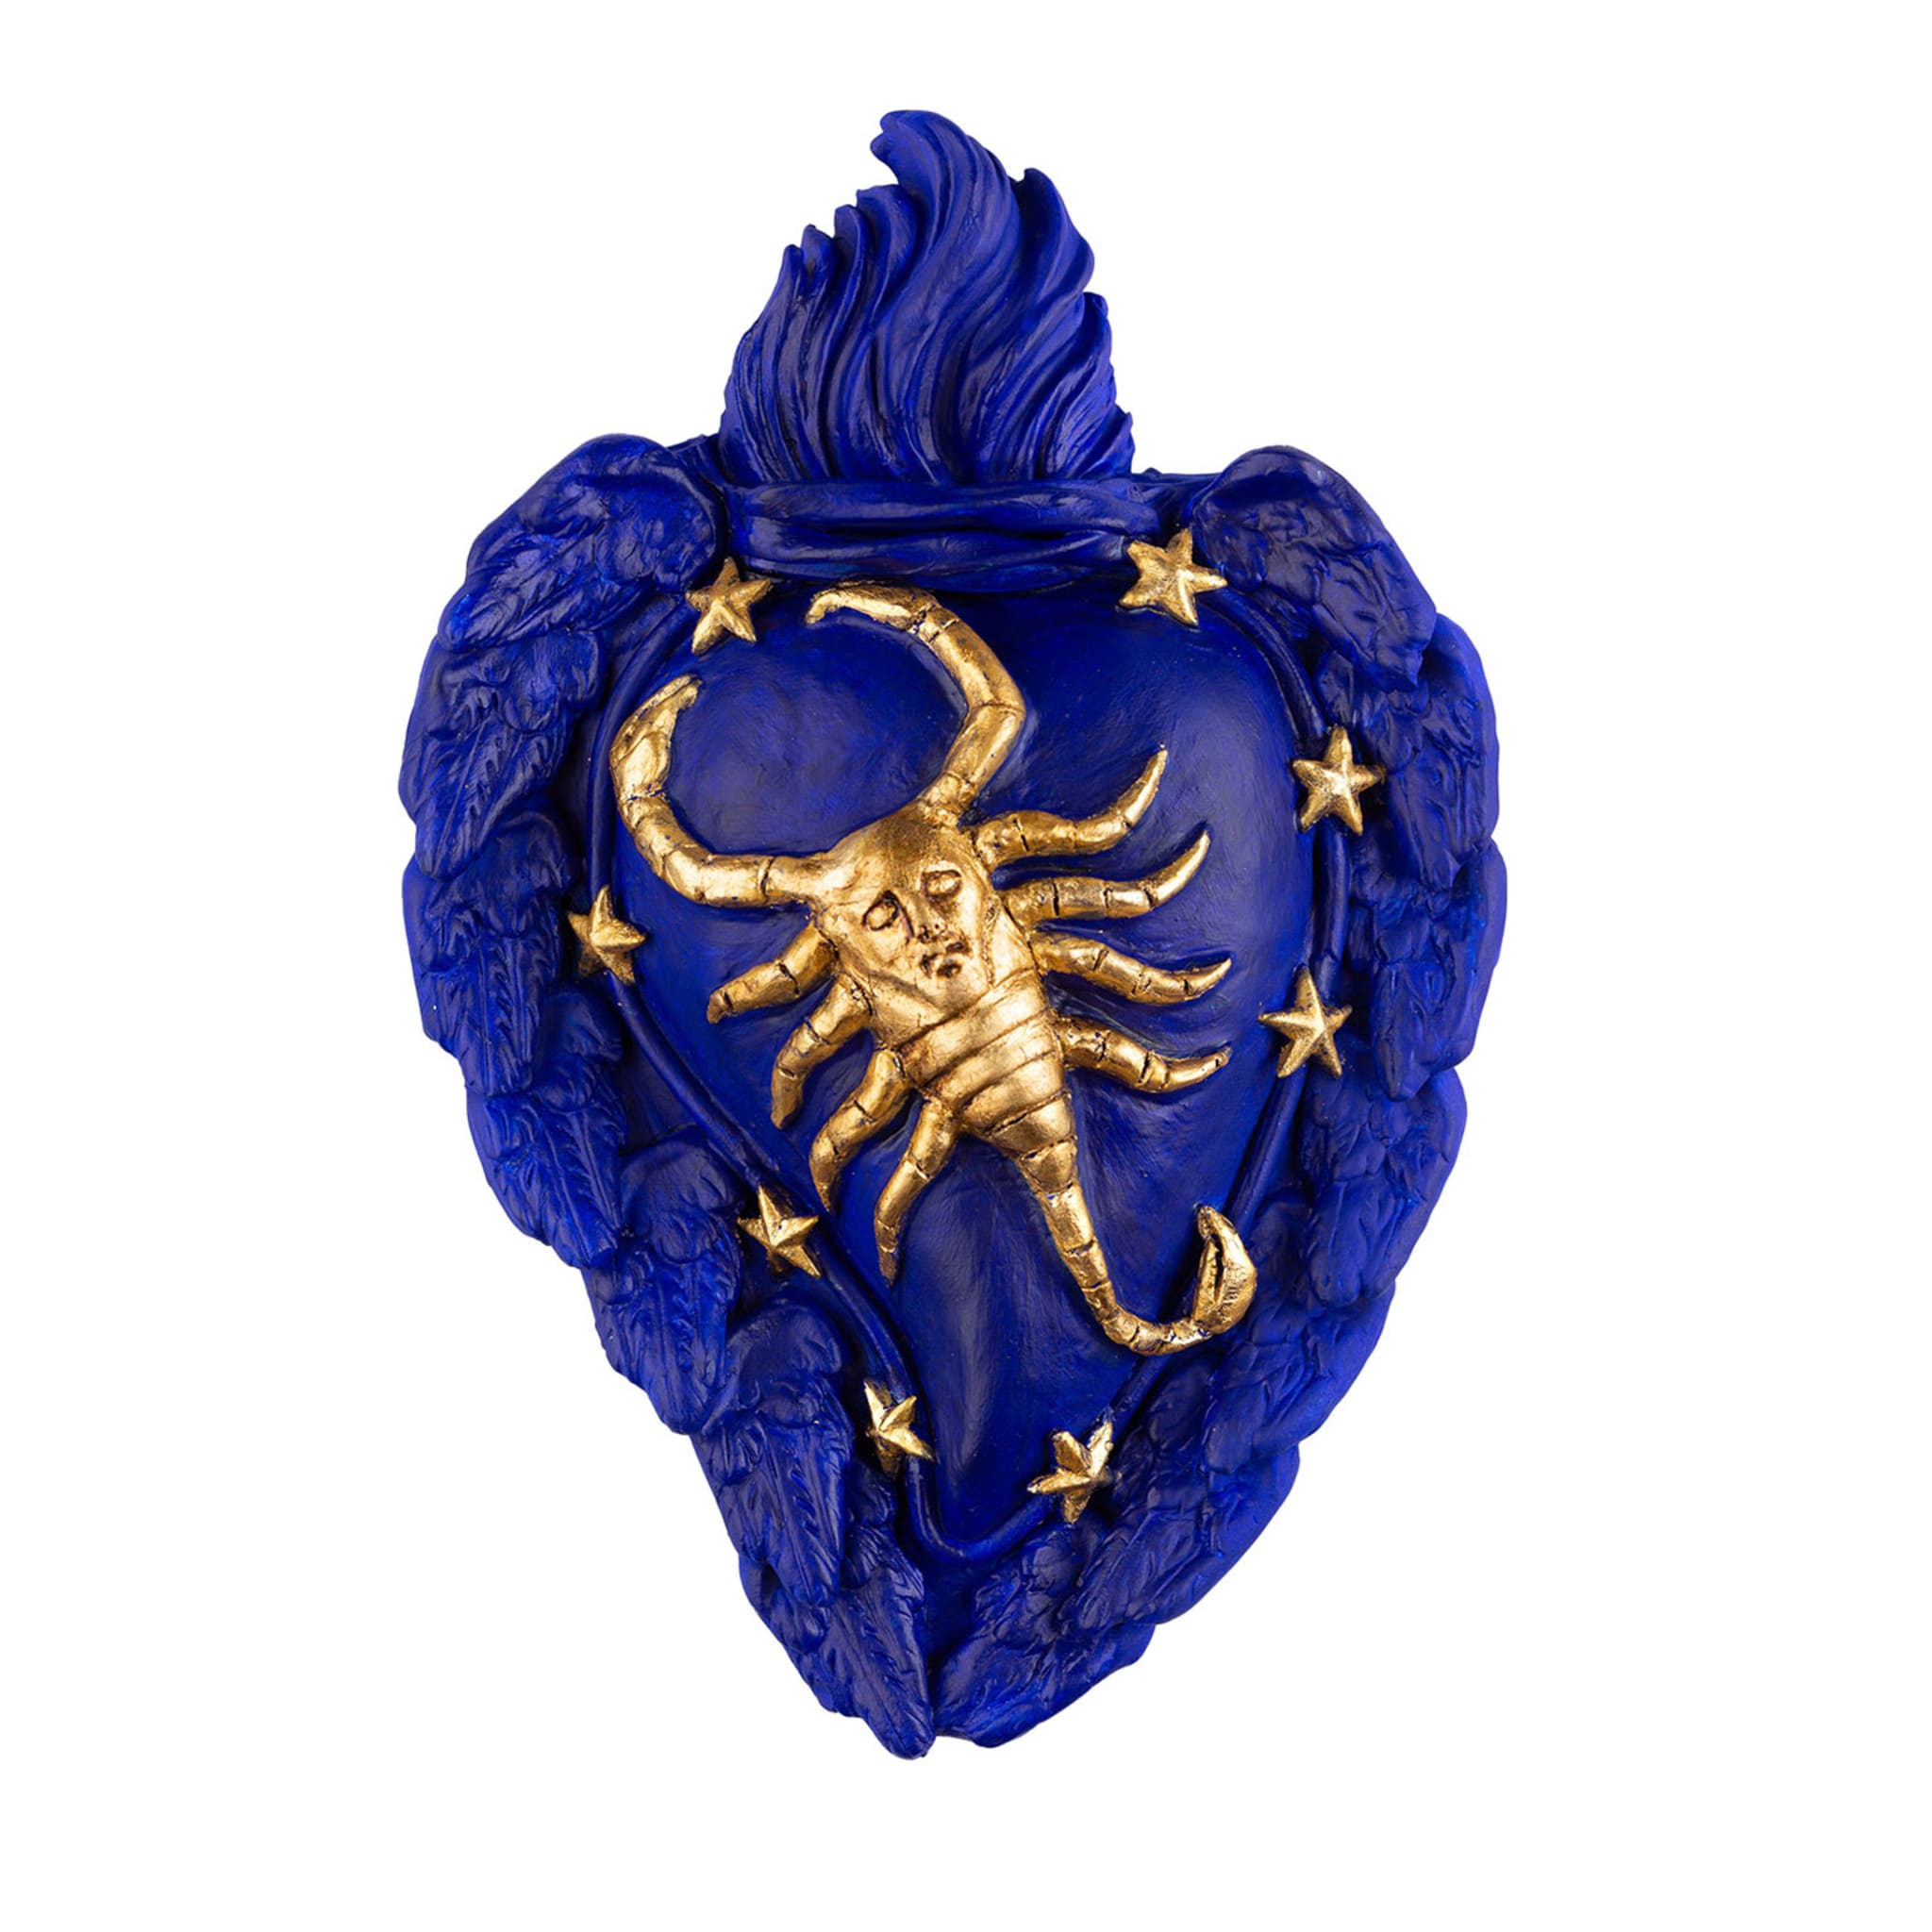 Zodiaco Scorpio Ceramic Heart - Main view